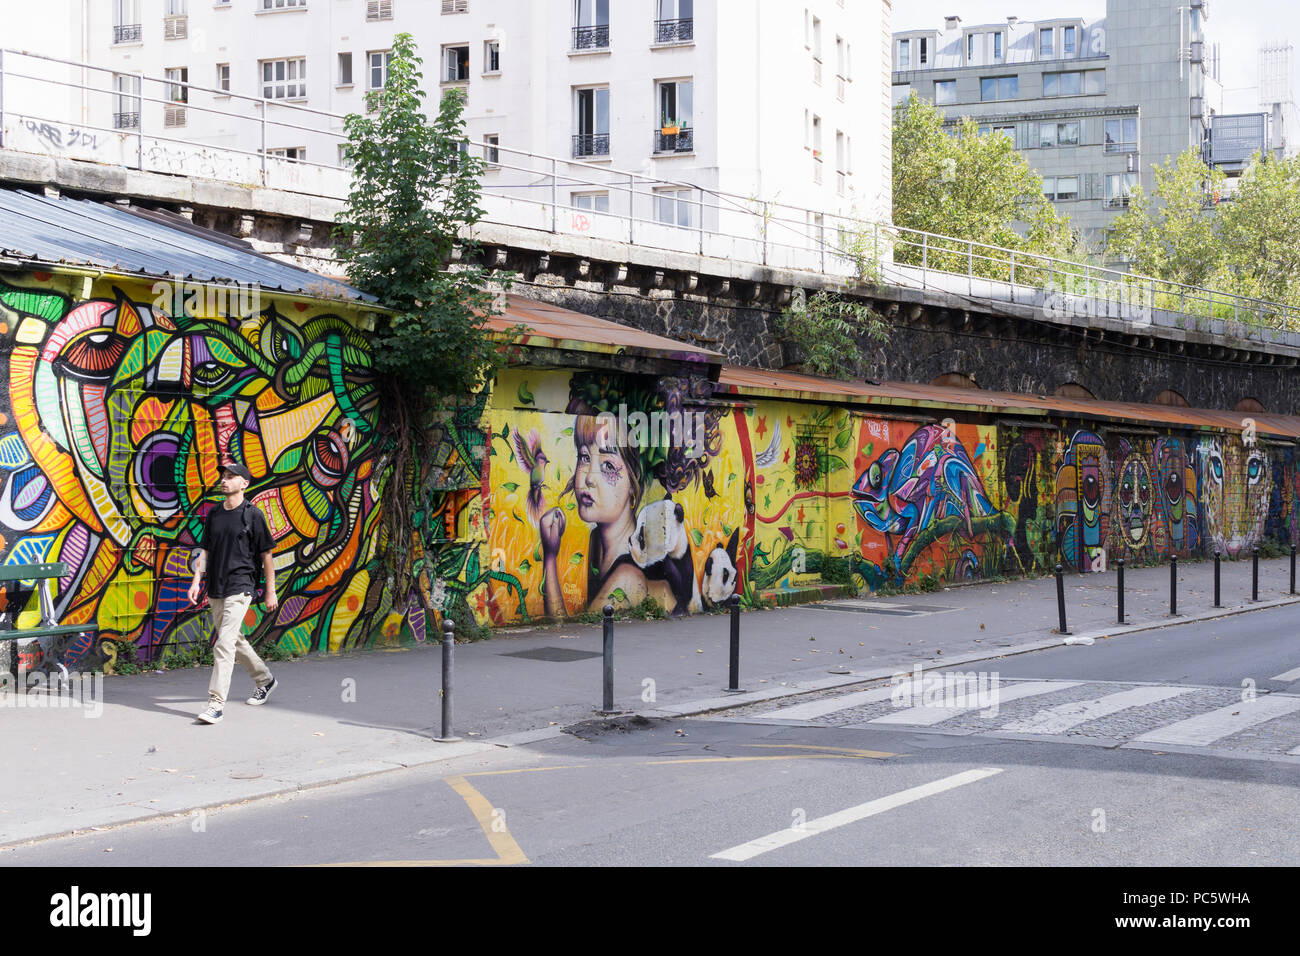 Street Art Paris - Wandbild auf eine Wand im Bereich des Kanals Ourcq in Paris, Frankreich, Europa gezeichnet. Stockfoto